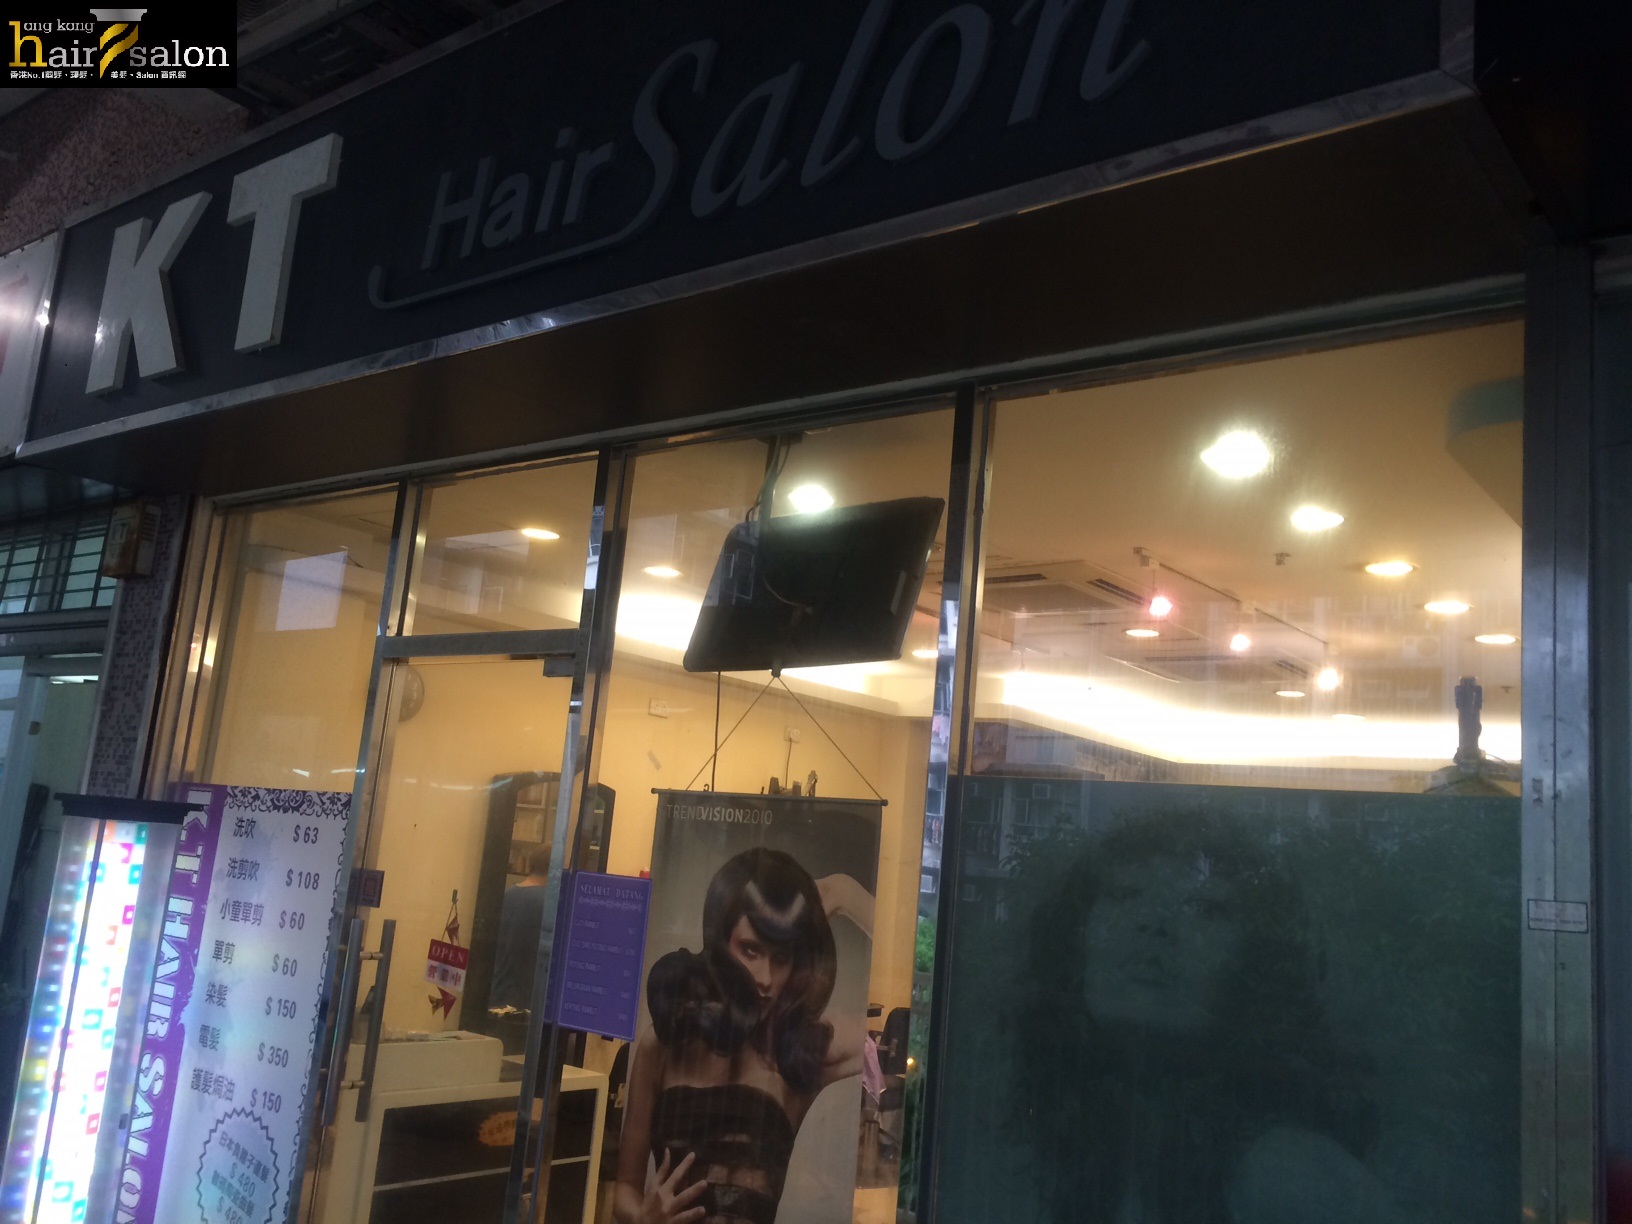 髮型屋: KT Hair Salon